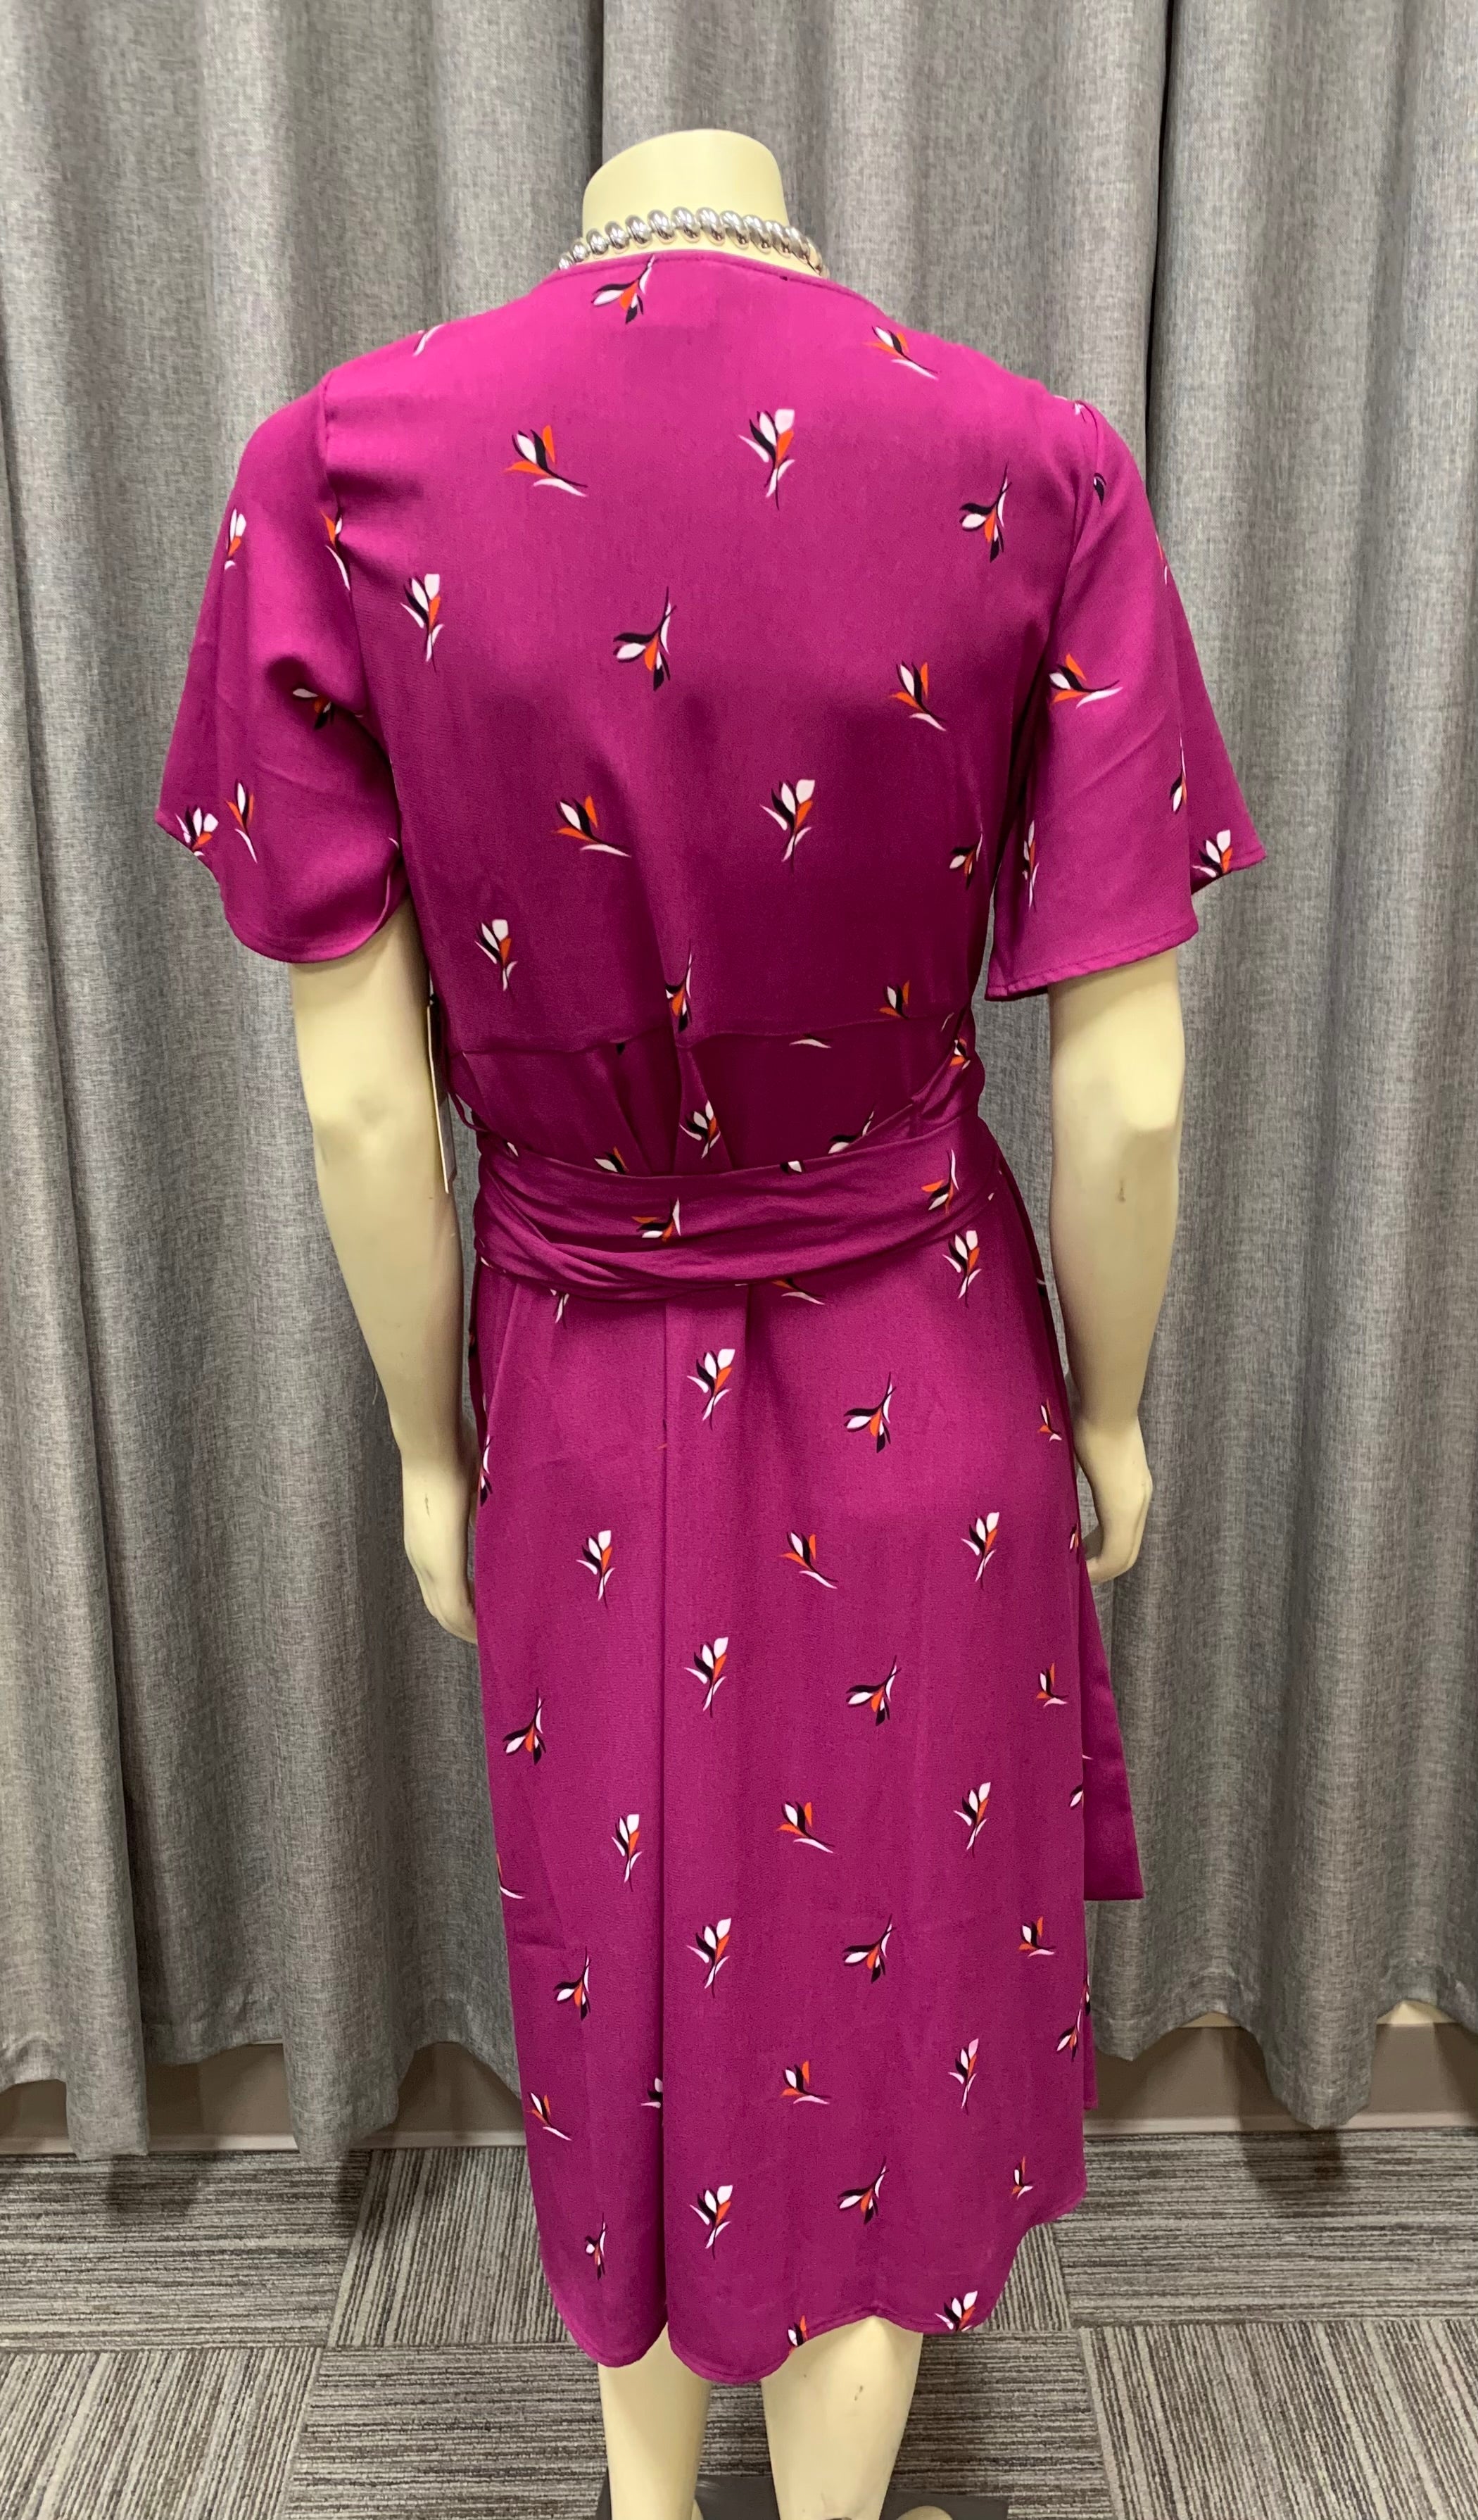 Halogen Purple Floral Wrap Midi Dress / Size S